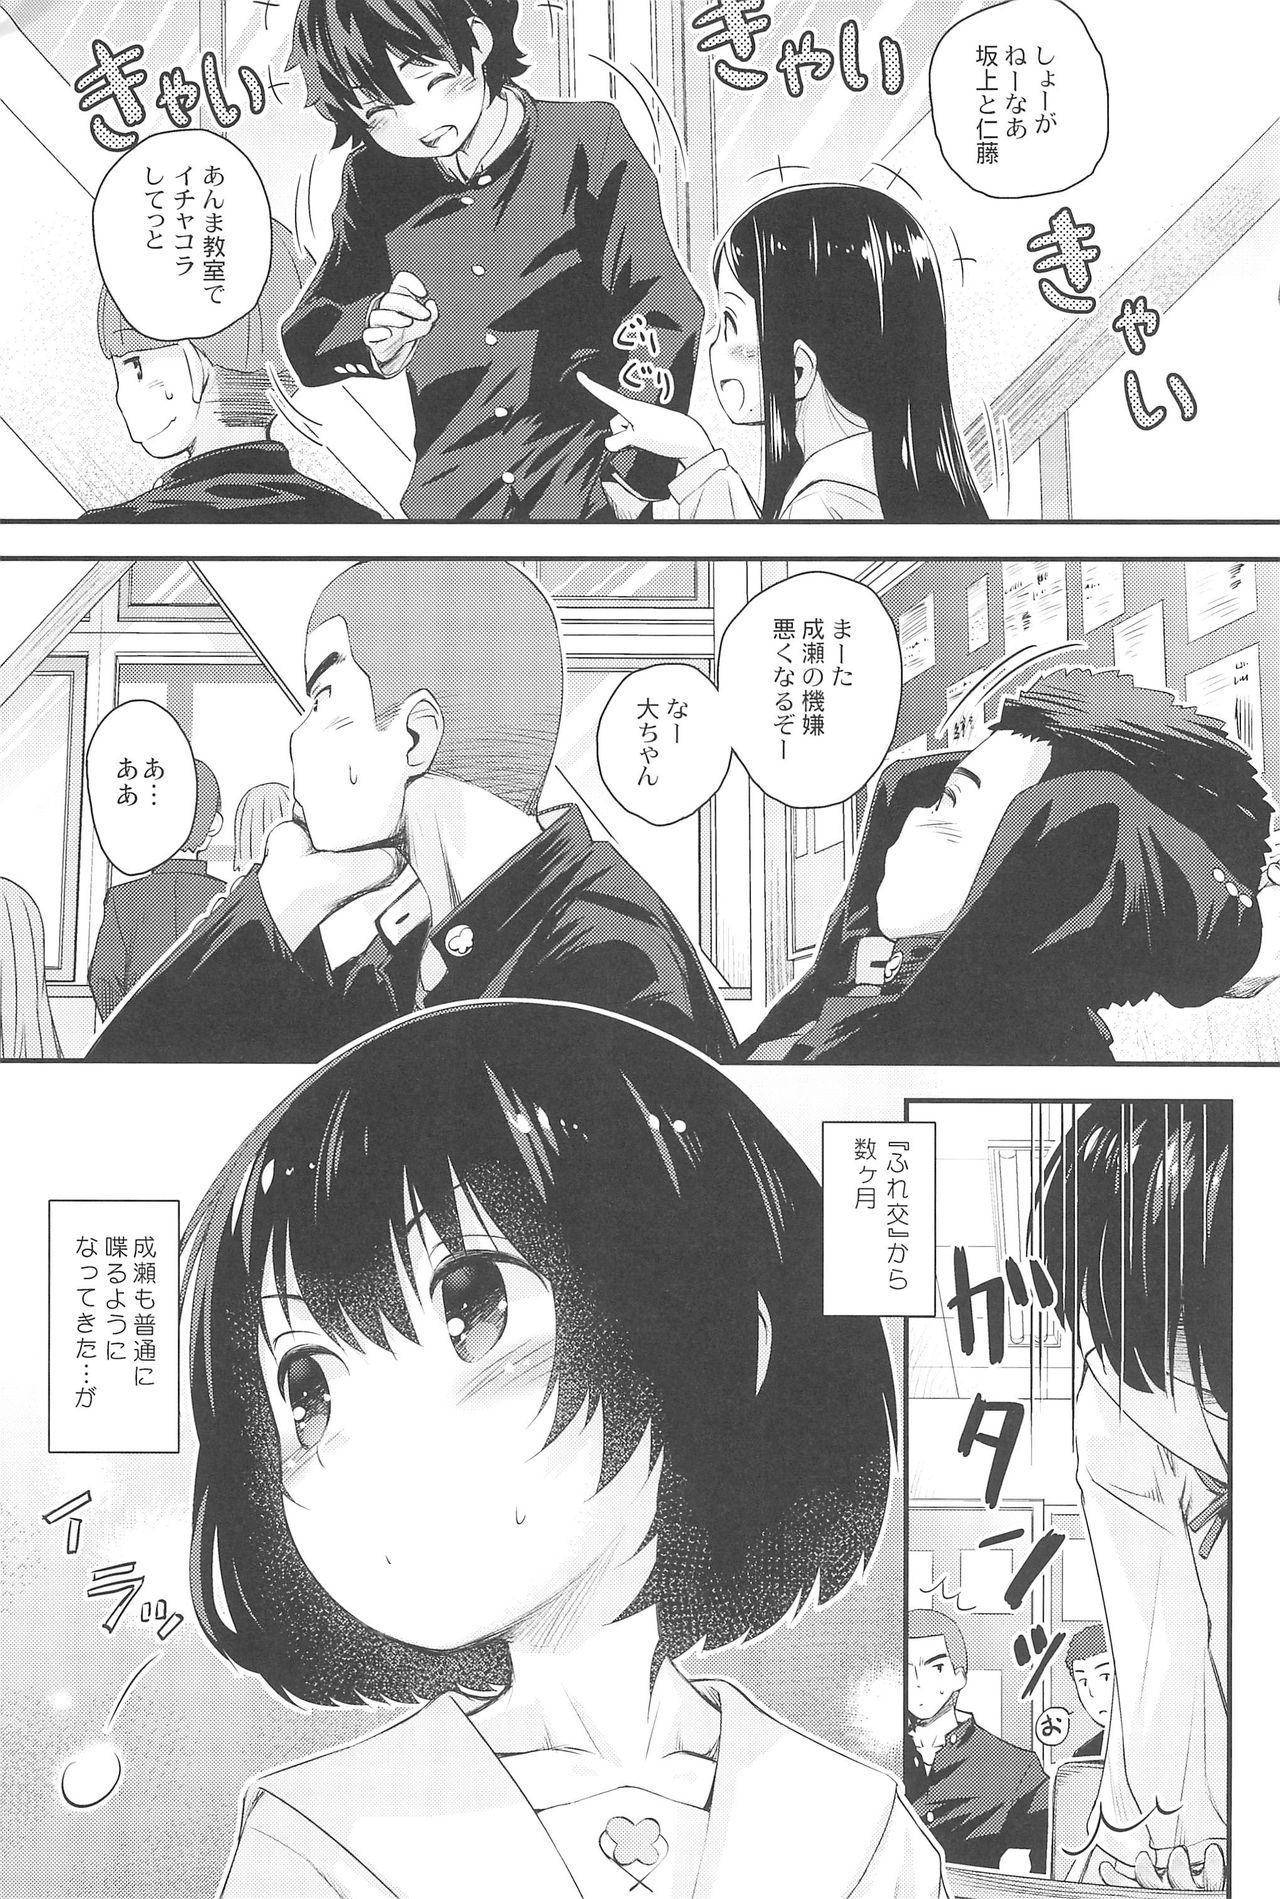 Negra Jun-chan to Oshiro de Sakebikko shitainda. - Kokoro ga sakebitagatterunda. Workout - Page 5